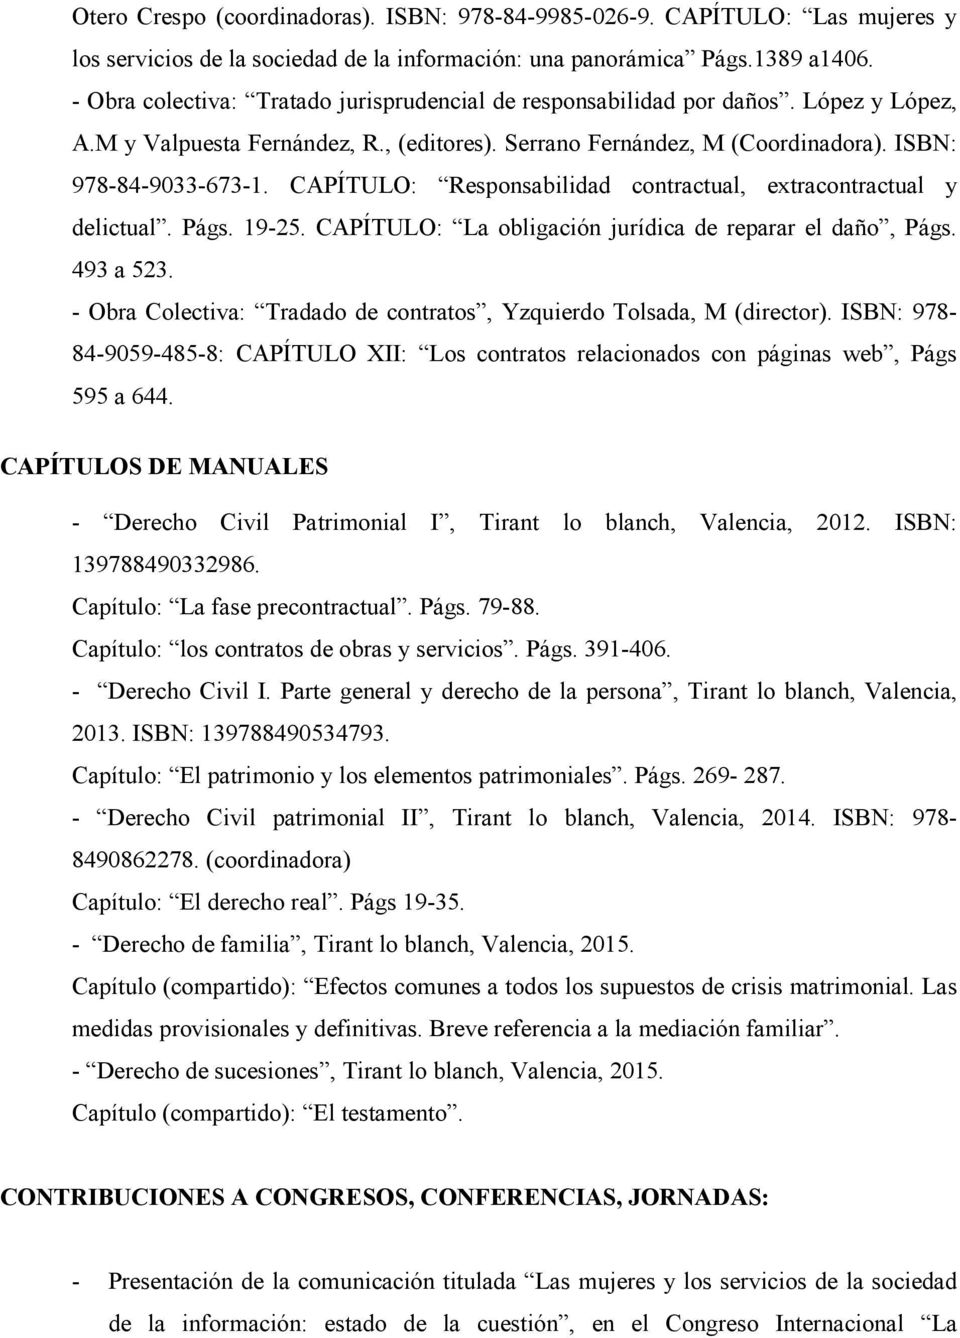 CAPÍTULO: Responsabilidad contractual, extracontractual y delictual. Págs. 19-25. CAPÍTULO: La obligación jurídica de reparar el daño, Págs. 493 a 523.